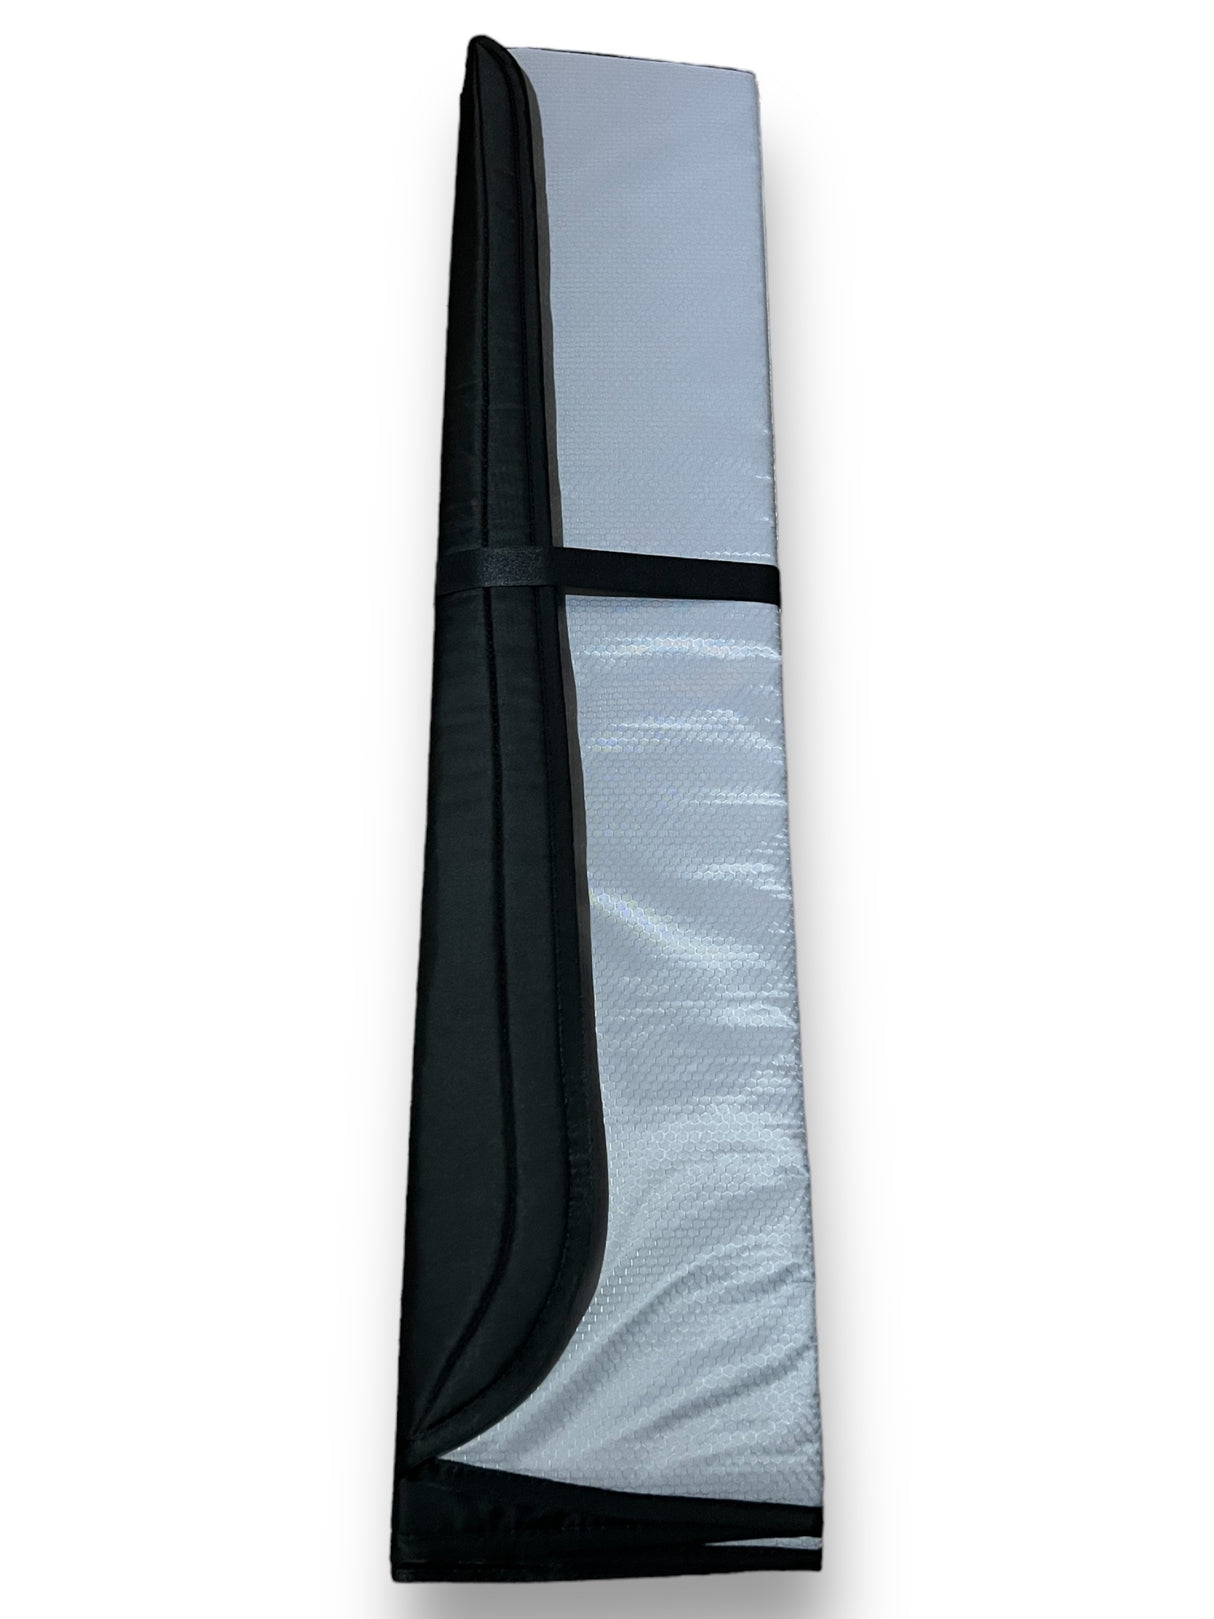 Parabrisas magnético aislado WINdoûr y cubierta opaca para ventana para todos los modelos Sprinter.